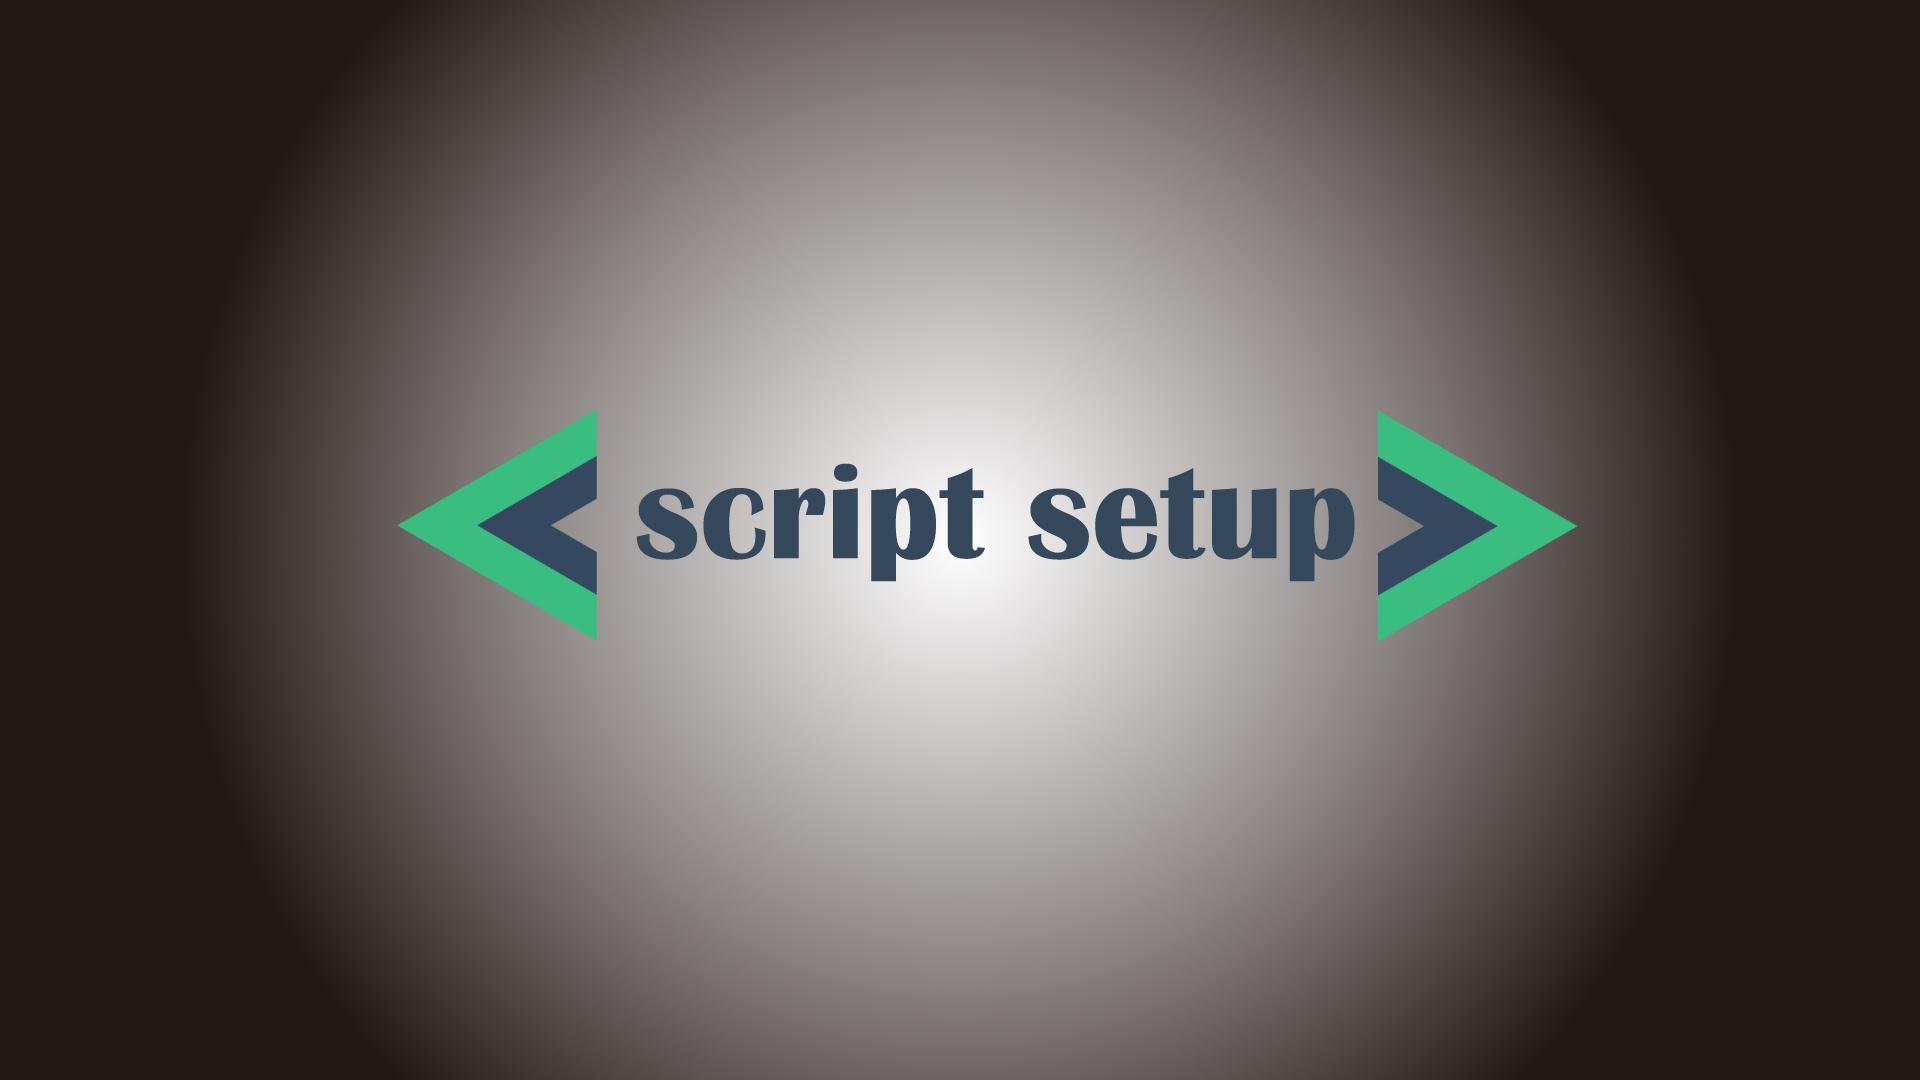 【Vue3】script setup構文の使用方法とメリット【propsとemitsも解説】